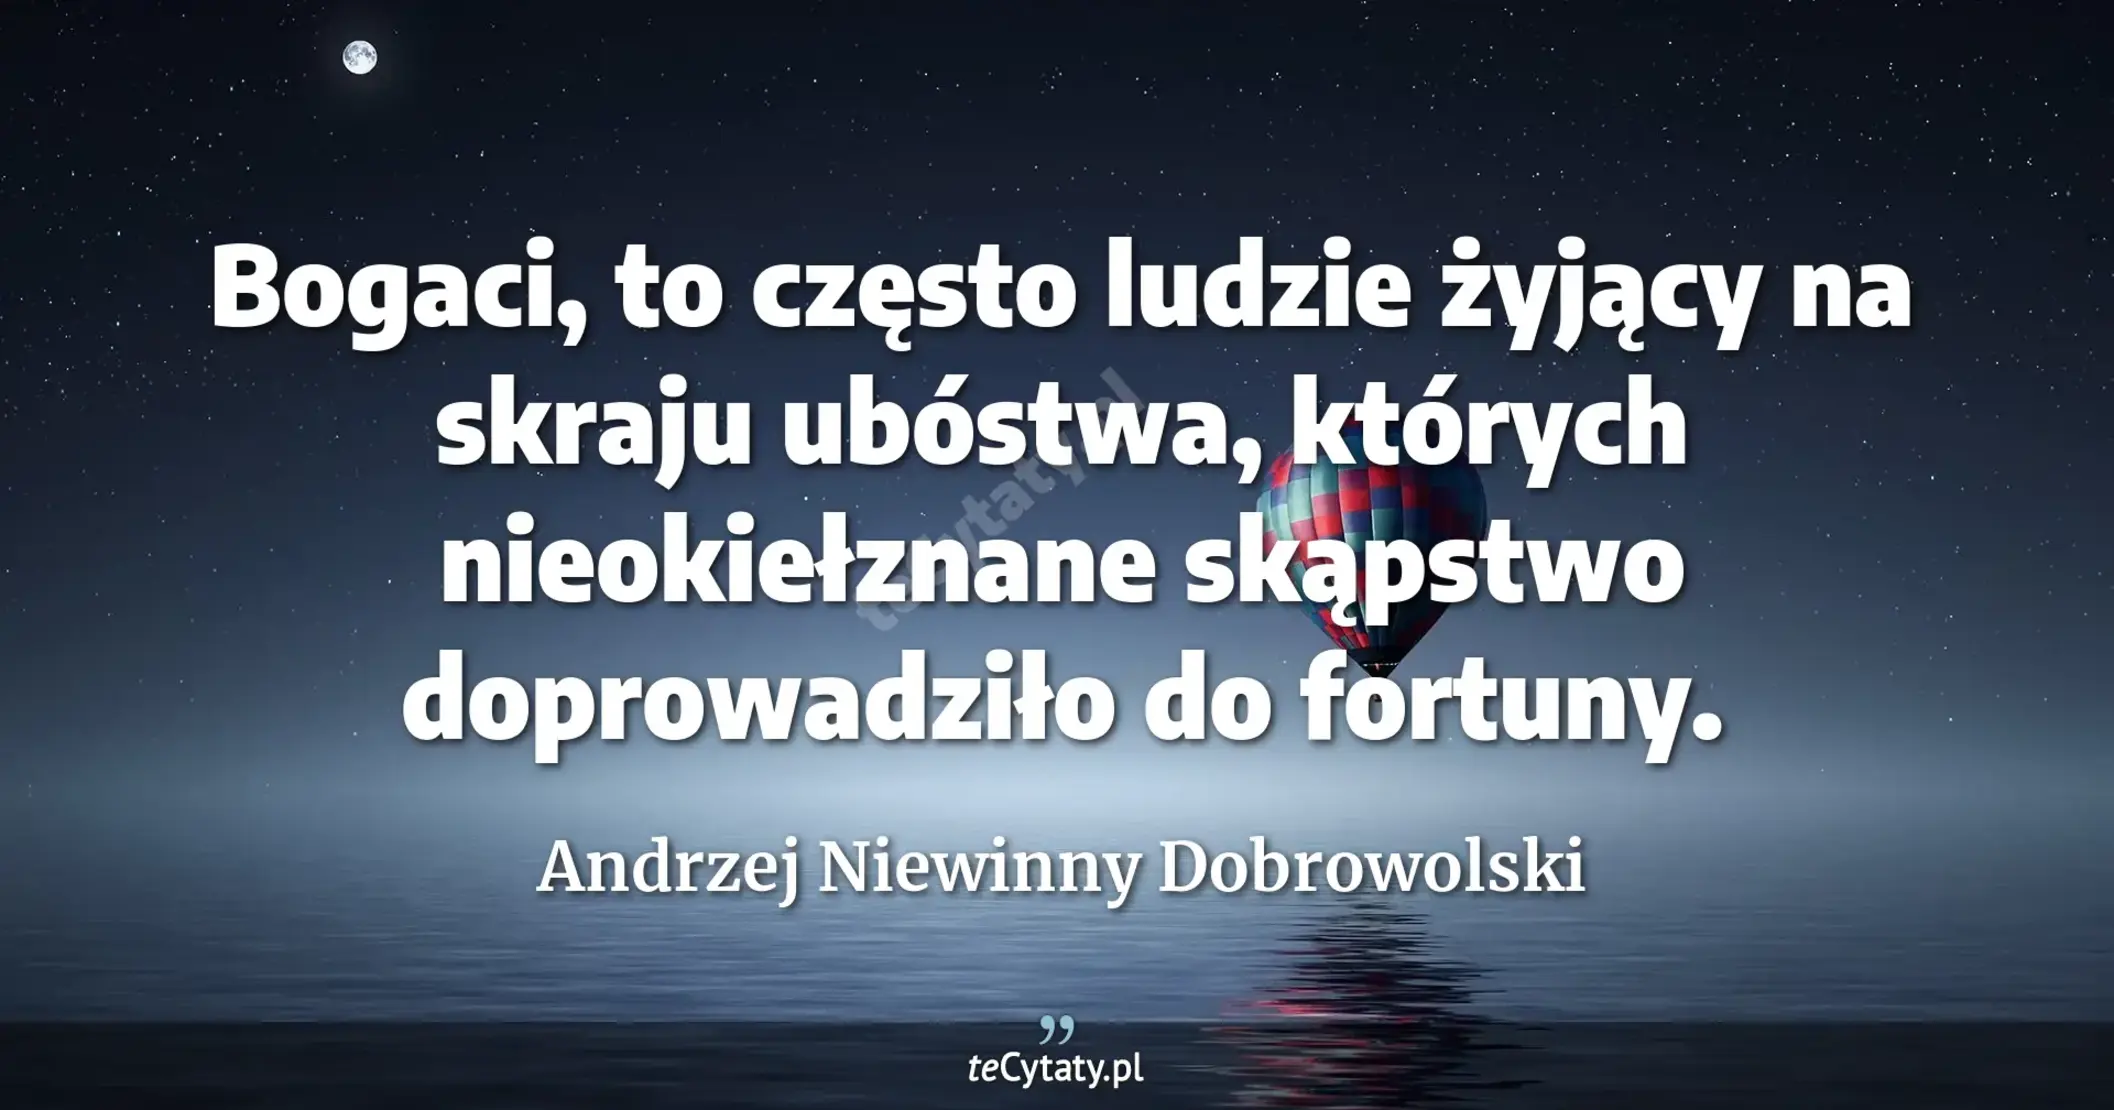 Bogaci, to często ludzie żyjący na skraju ubóstwa, których
nieokiełznane skąpstwo doprowadziło do fortuny. - Andrzej Niewinny Dobrowolski